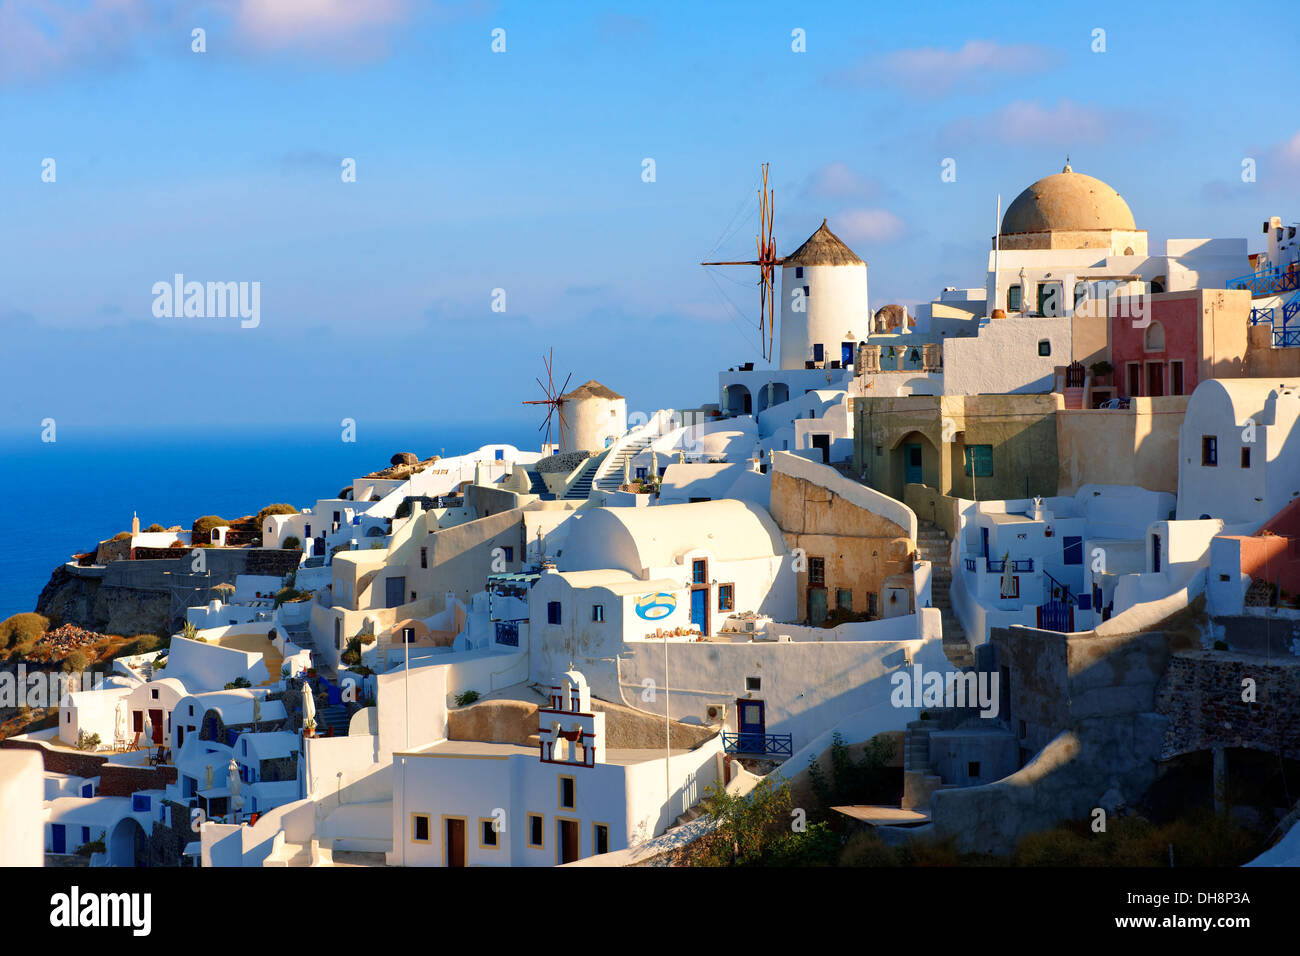 Oia (Ia) Santorini - Windmühlen und Blick auf Stadt, griechischen Kykladen-Inseln - Bilder, Fotos und Bilder Stockfoto